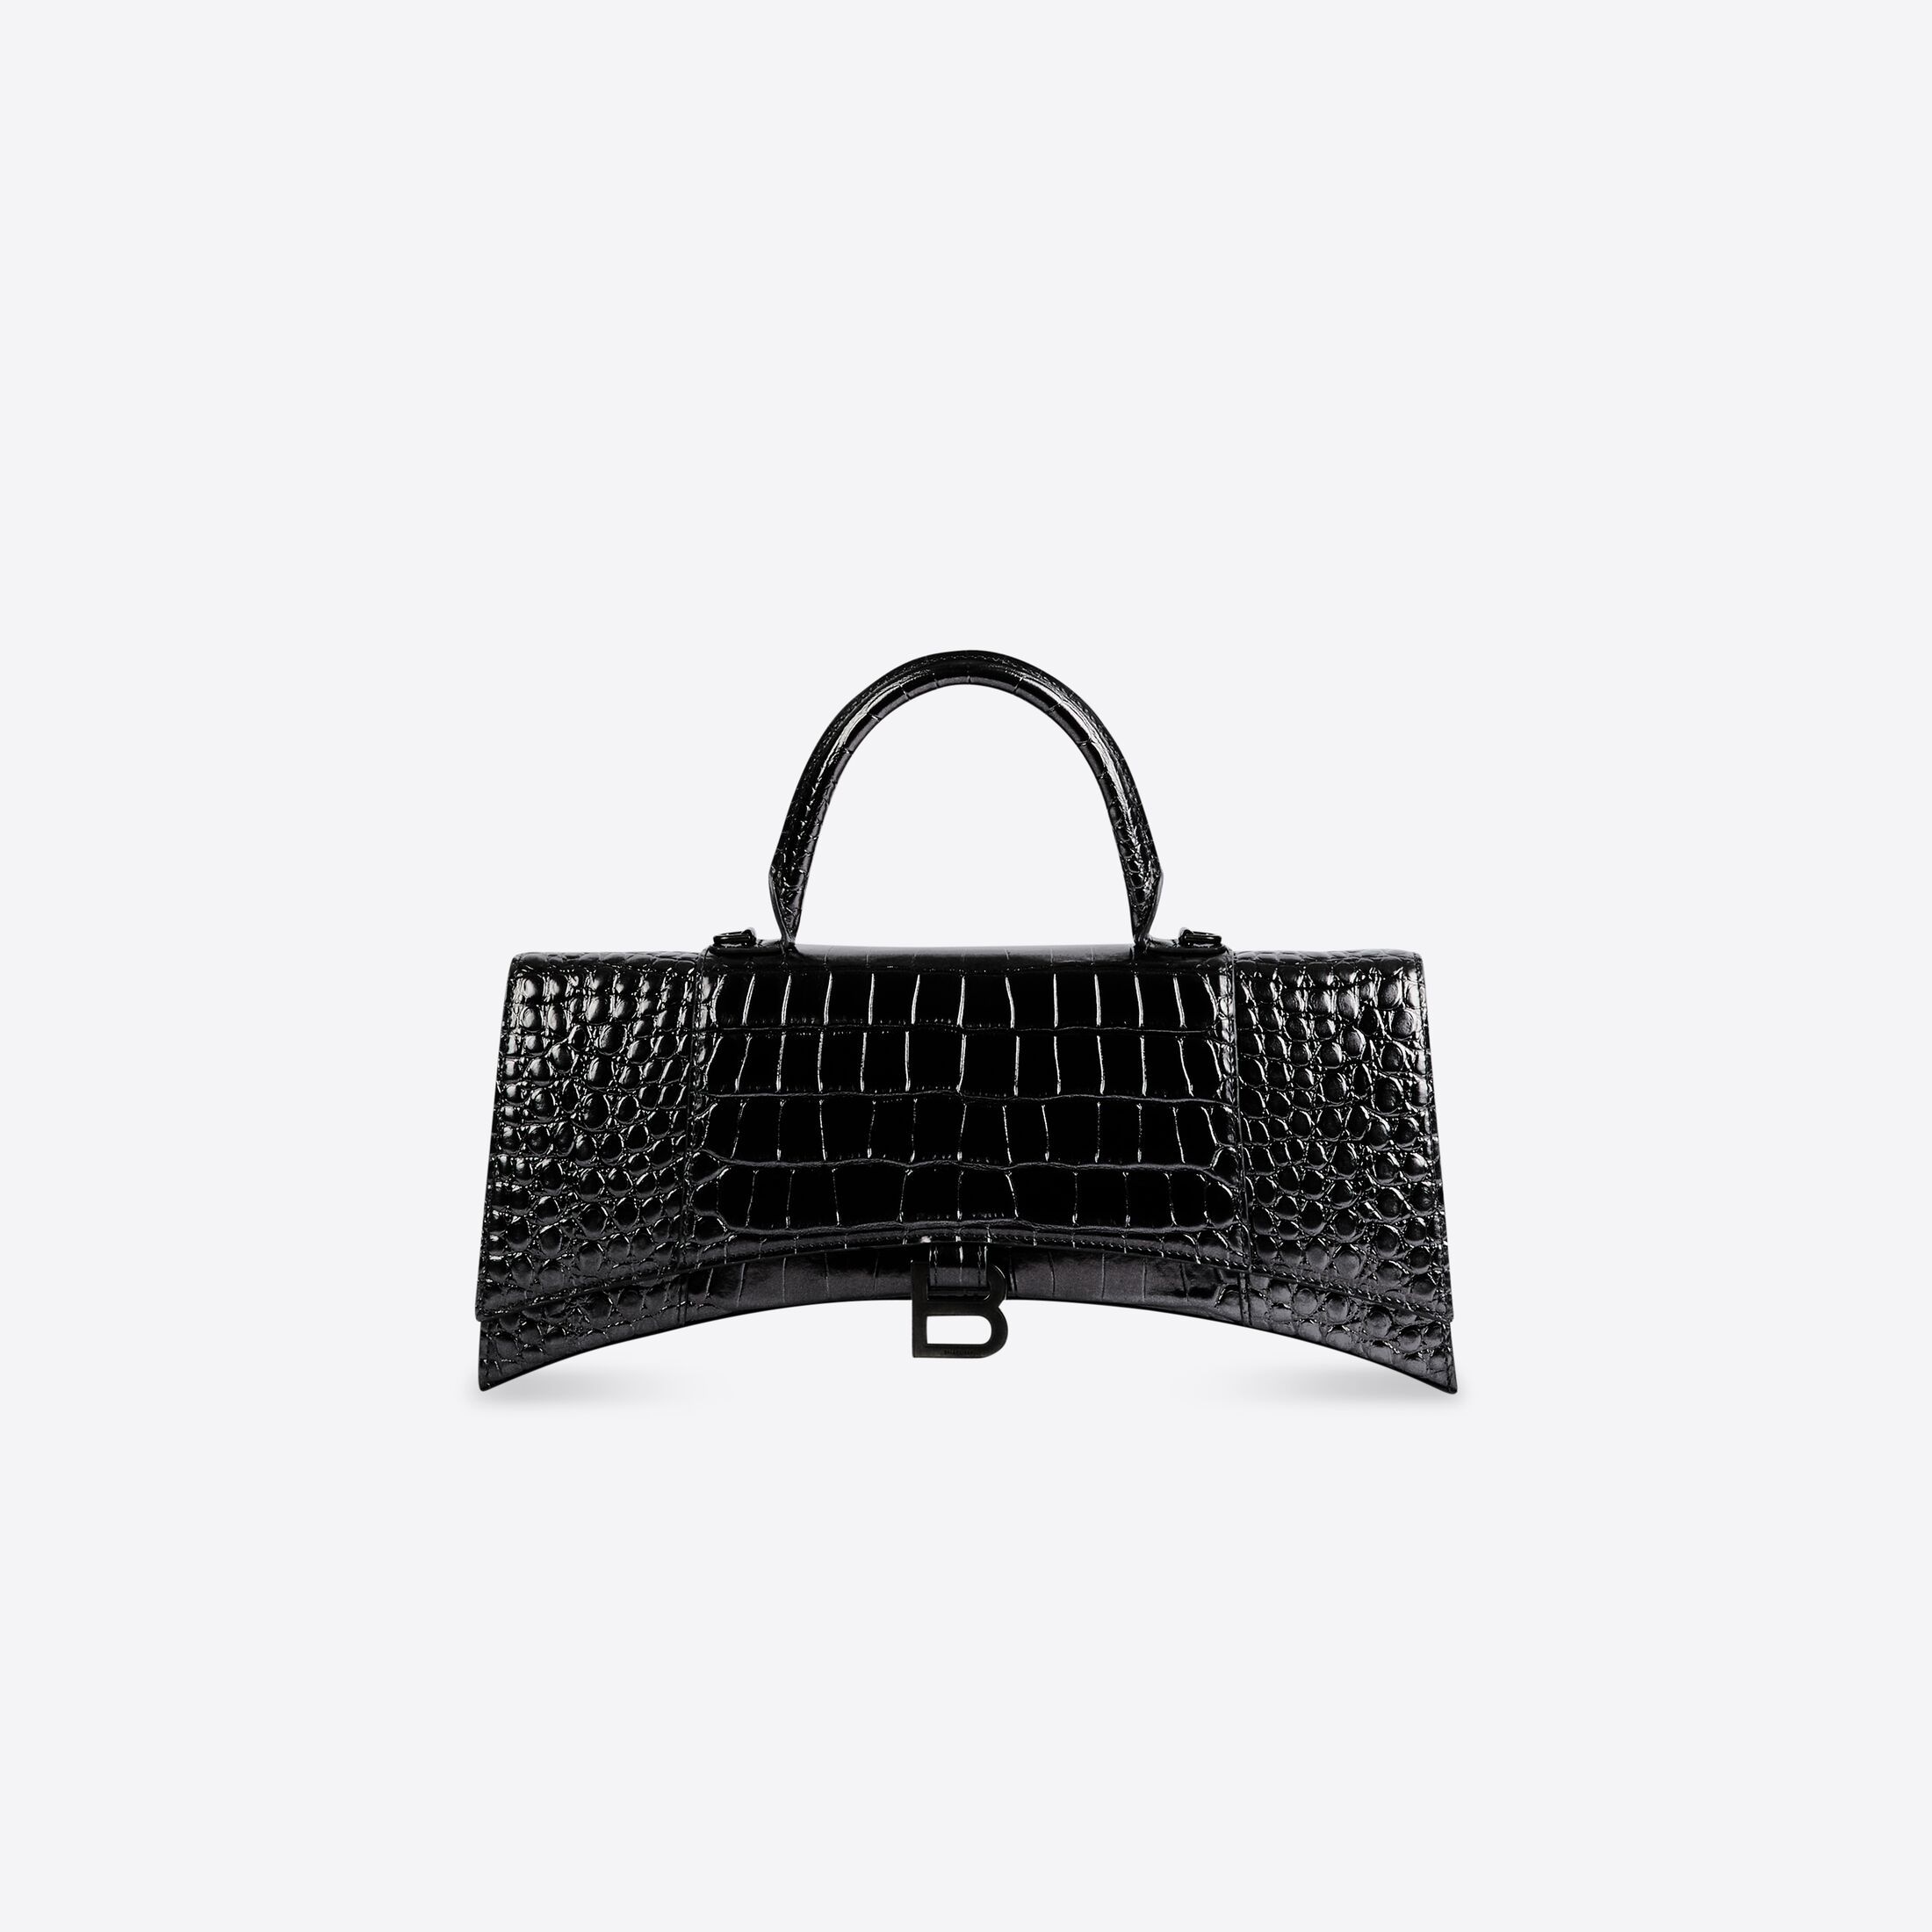 hourglass stretched handbag | Balenciaga